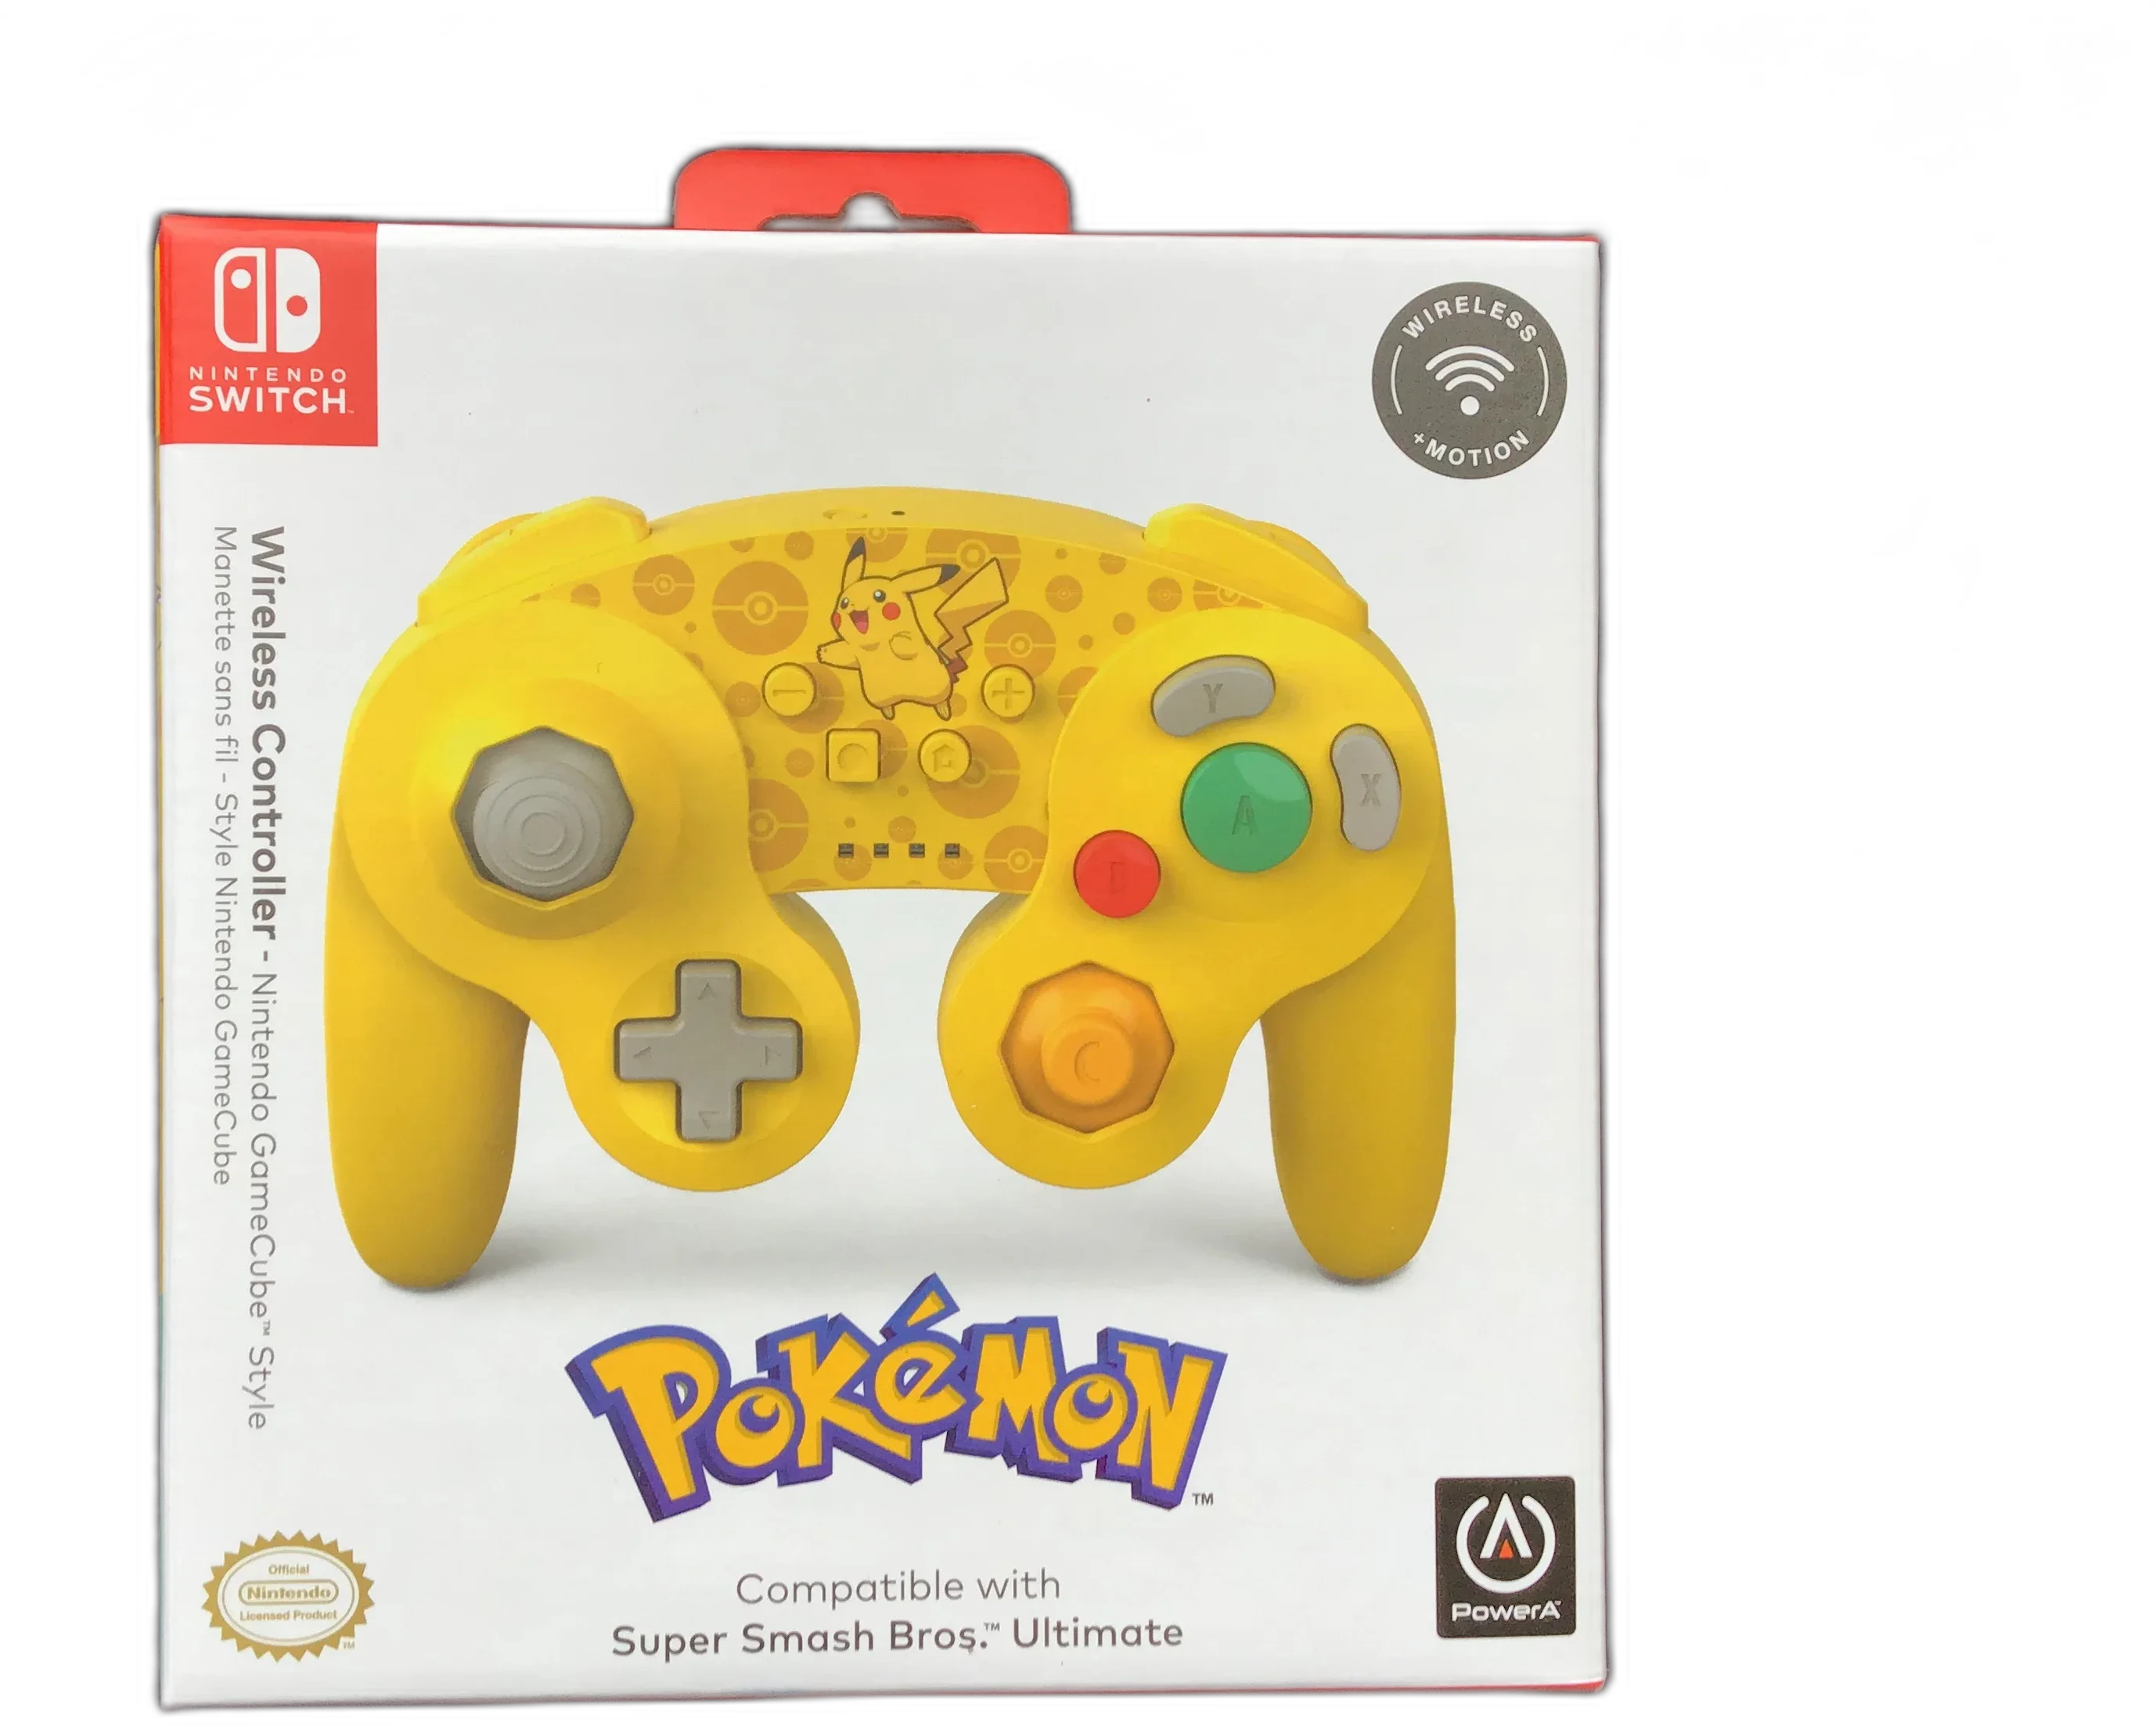  Power A Switch Pokemon Pikachu Wireless Controller